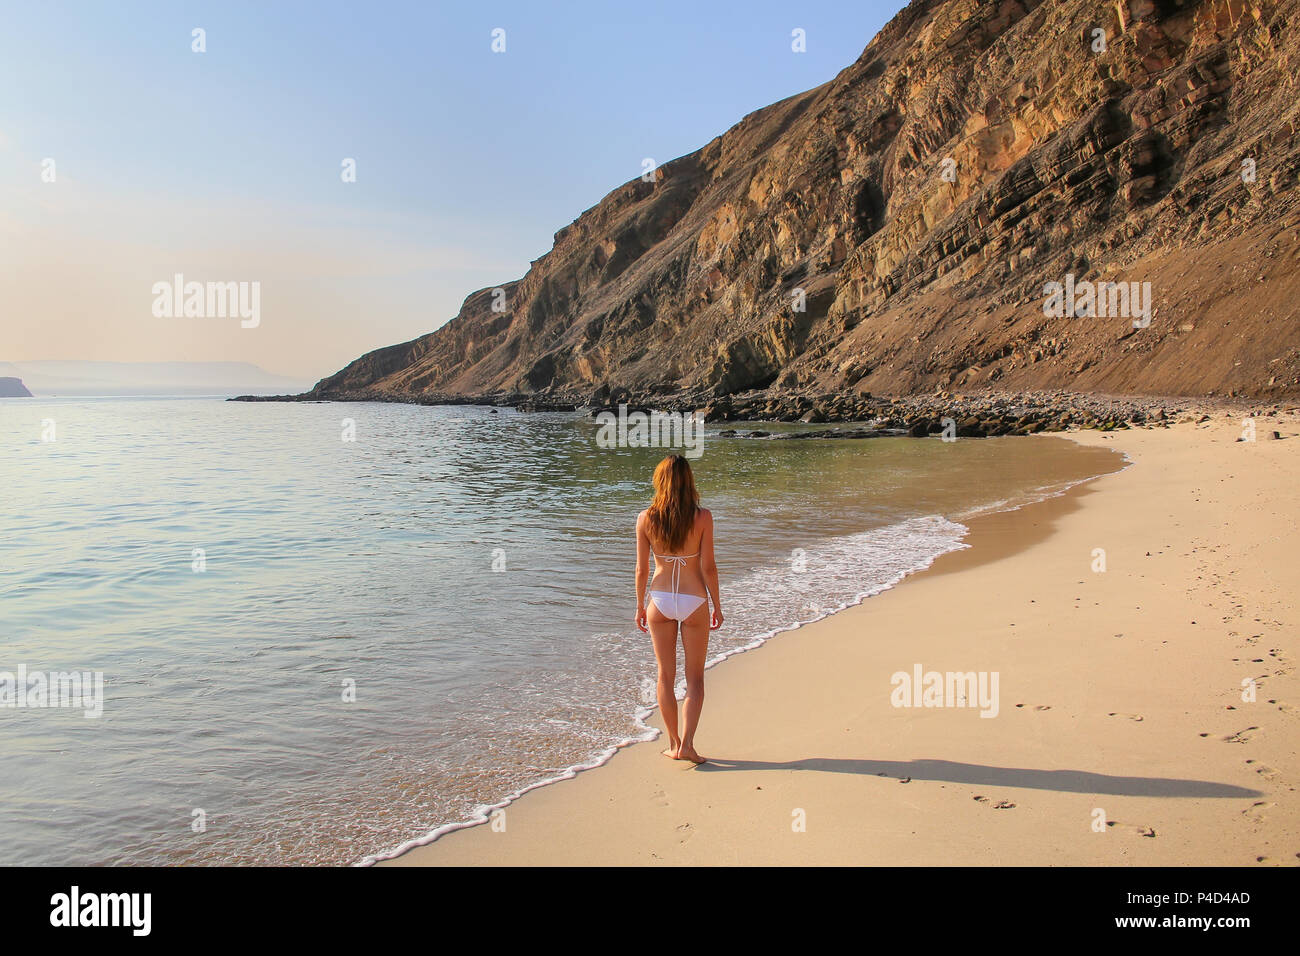 Young woman in bikini debout à La Mina Beach dans la réserve nationale de Paracas, au Pérou. Objectif principal de la réserve est de protéger l'écosystème marin et l'hist Banque D'Images